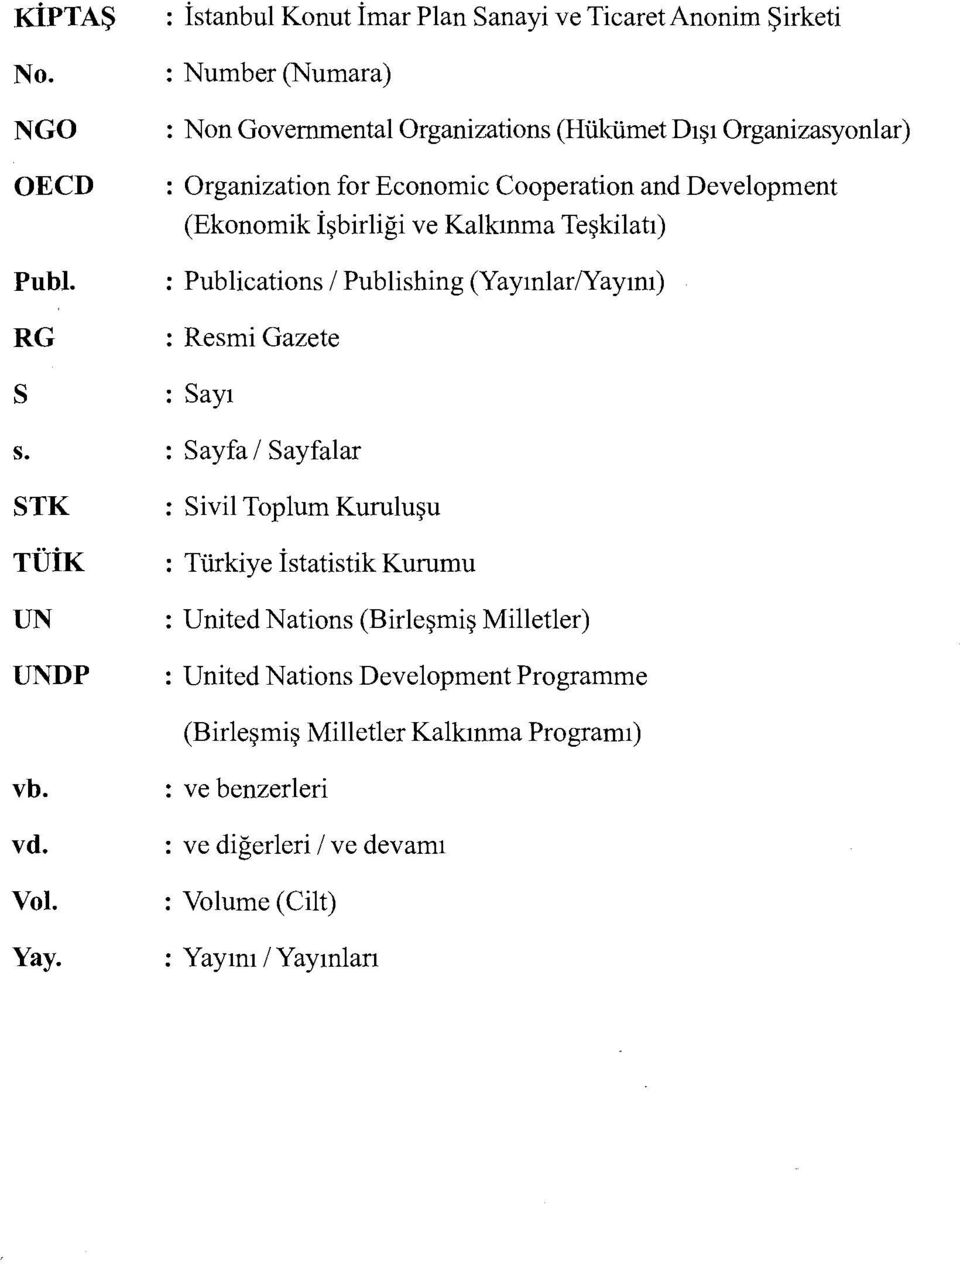 Organization for Economic Cooperation and Development (Ekonomik İşbirliği ve Kalkınma Teşkilatı) : Publications 1 Publishing (Yayınlar/Yayını) : Resmi Gazete :